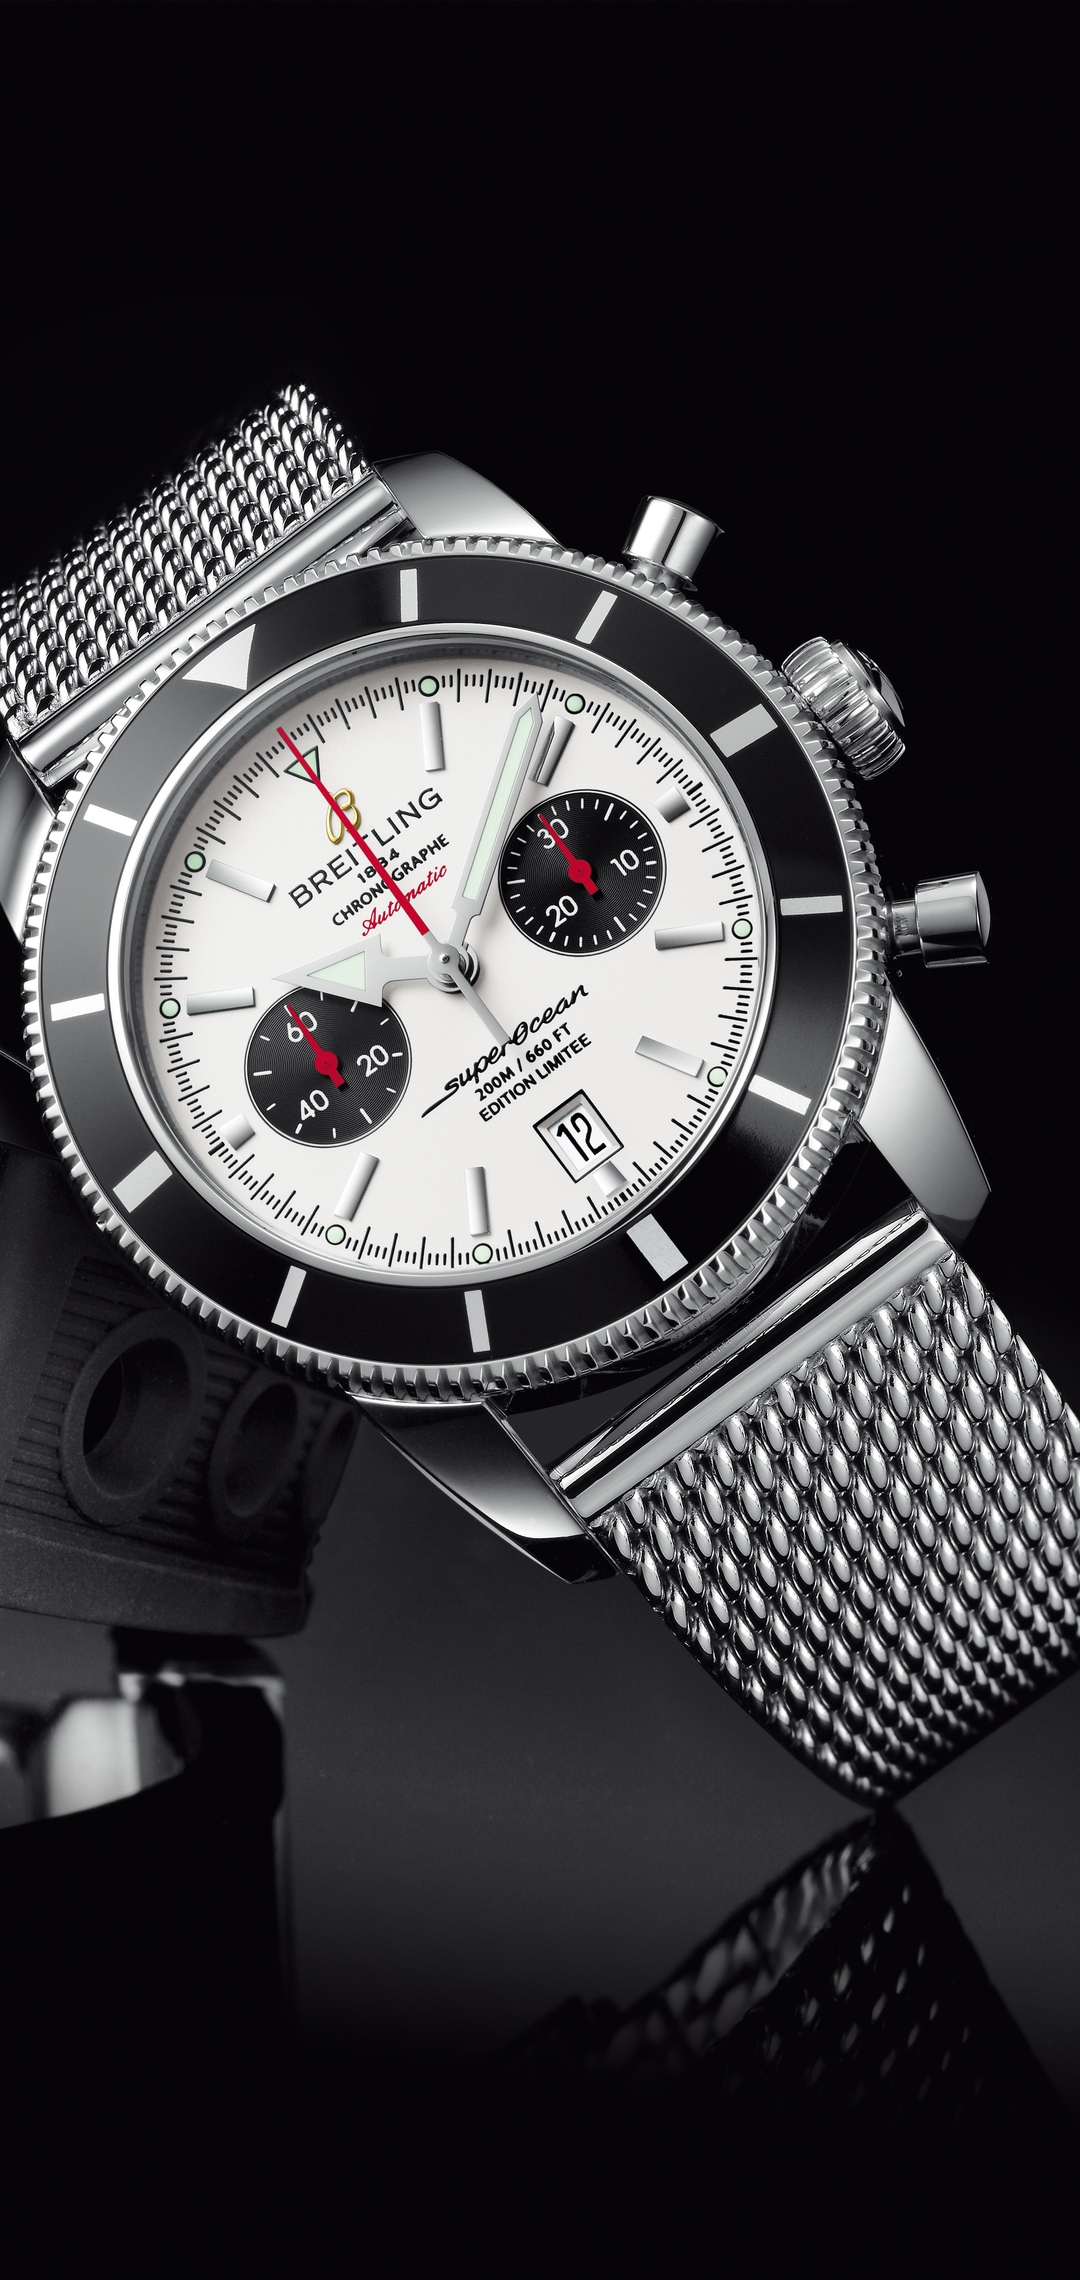 Картинка: Часы, стрелки, стиль, дизайн, время, наручные, бренд, Breitling